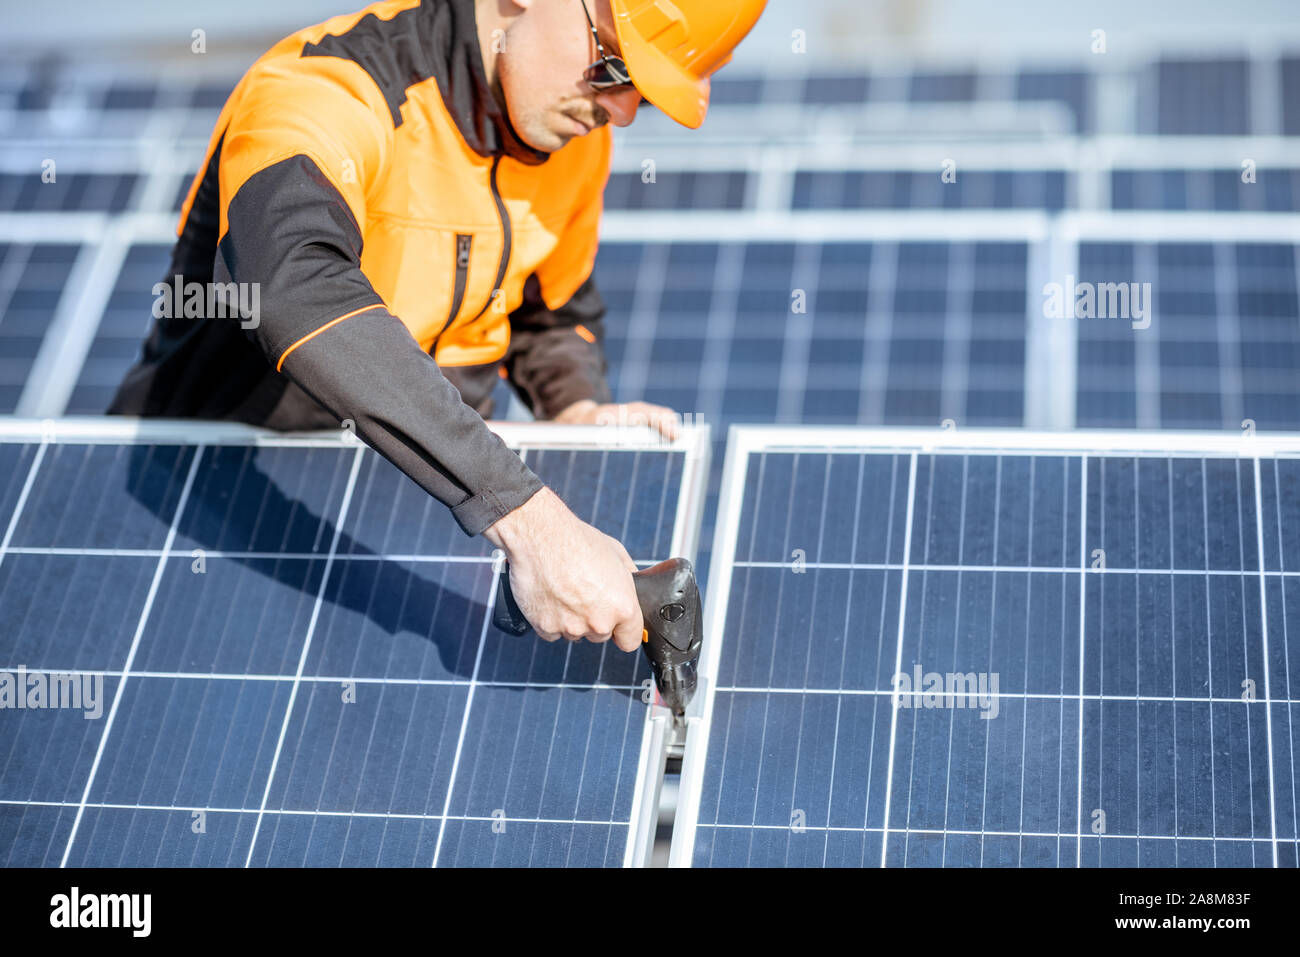 Ben attrezzato lavoratore in arancione di protezione abbigliamento installazione o sostituzione pannello solare su un tetto fotovoltaico impianto. Concetto di manutenzione e installazione di stazioni solari Foto Stock